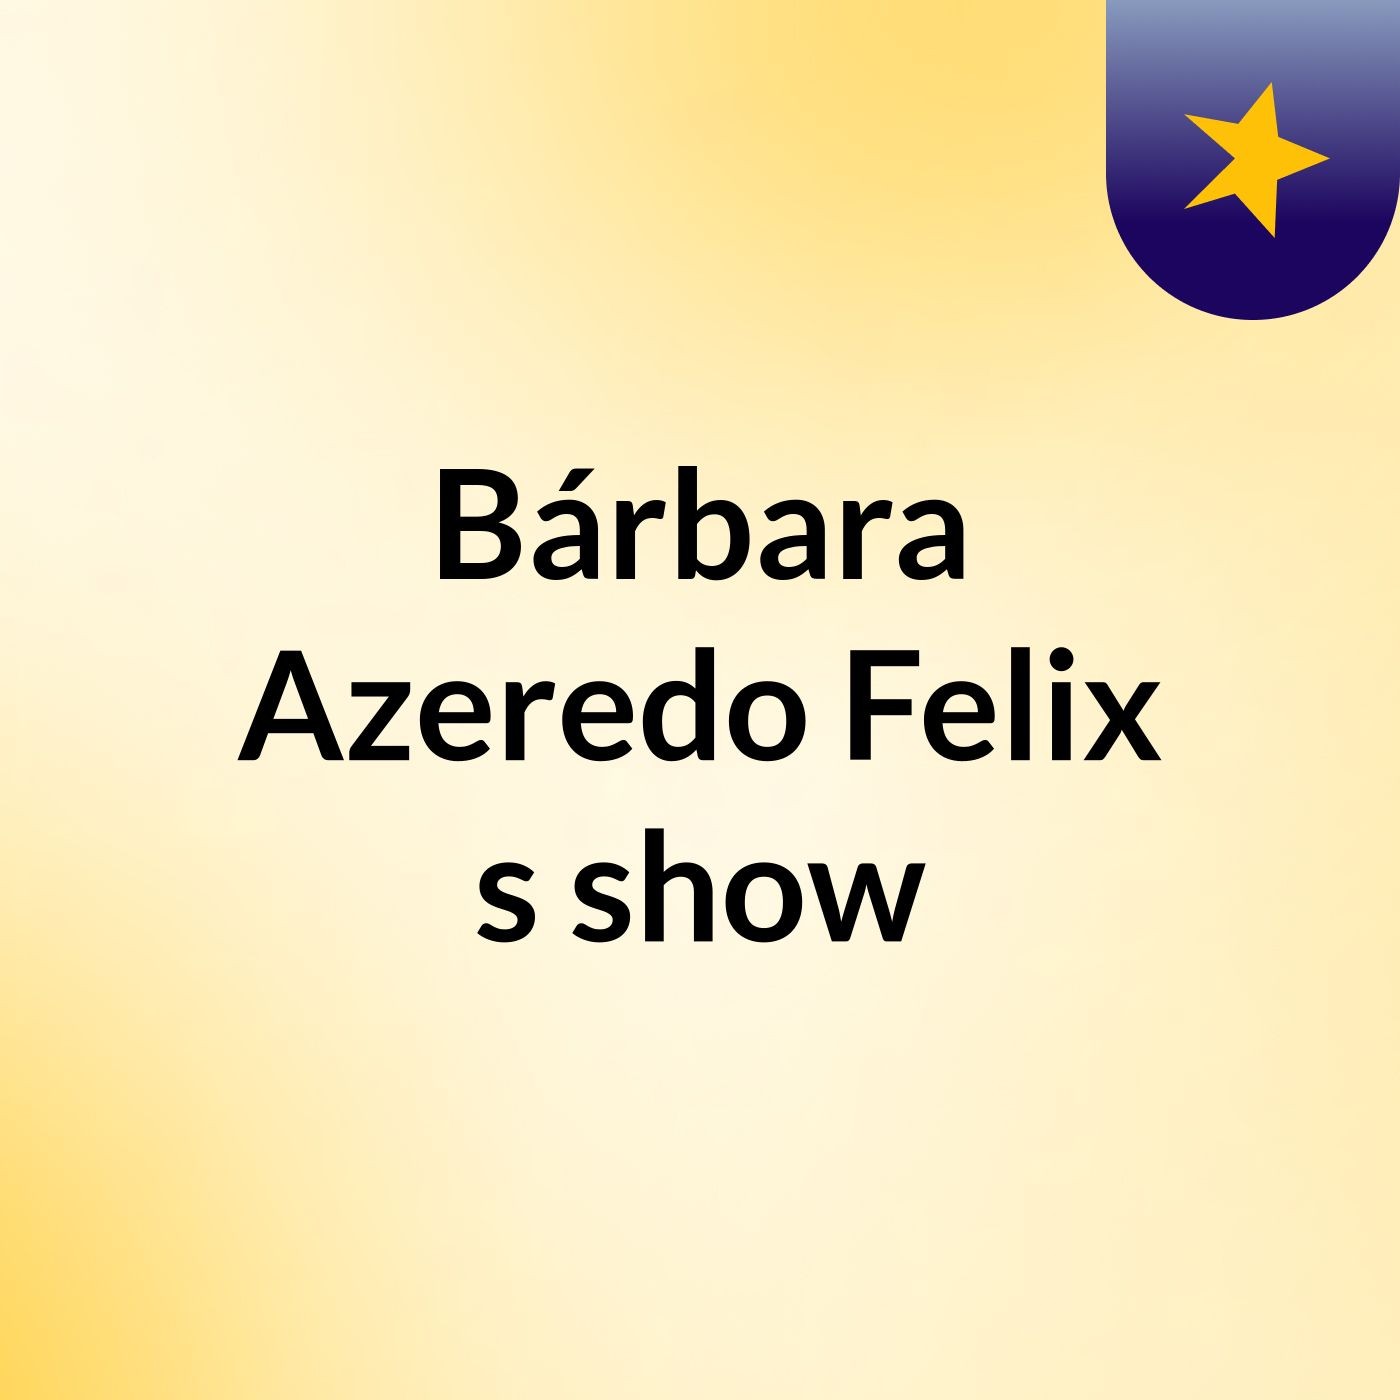 Bárbara Azeredo Felix's show